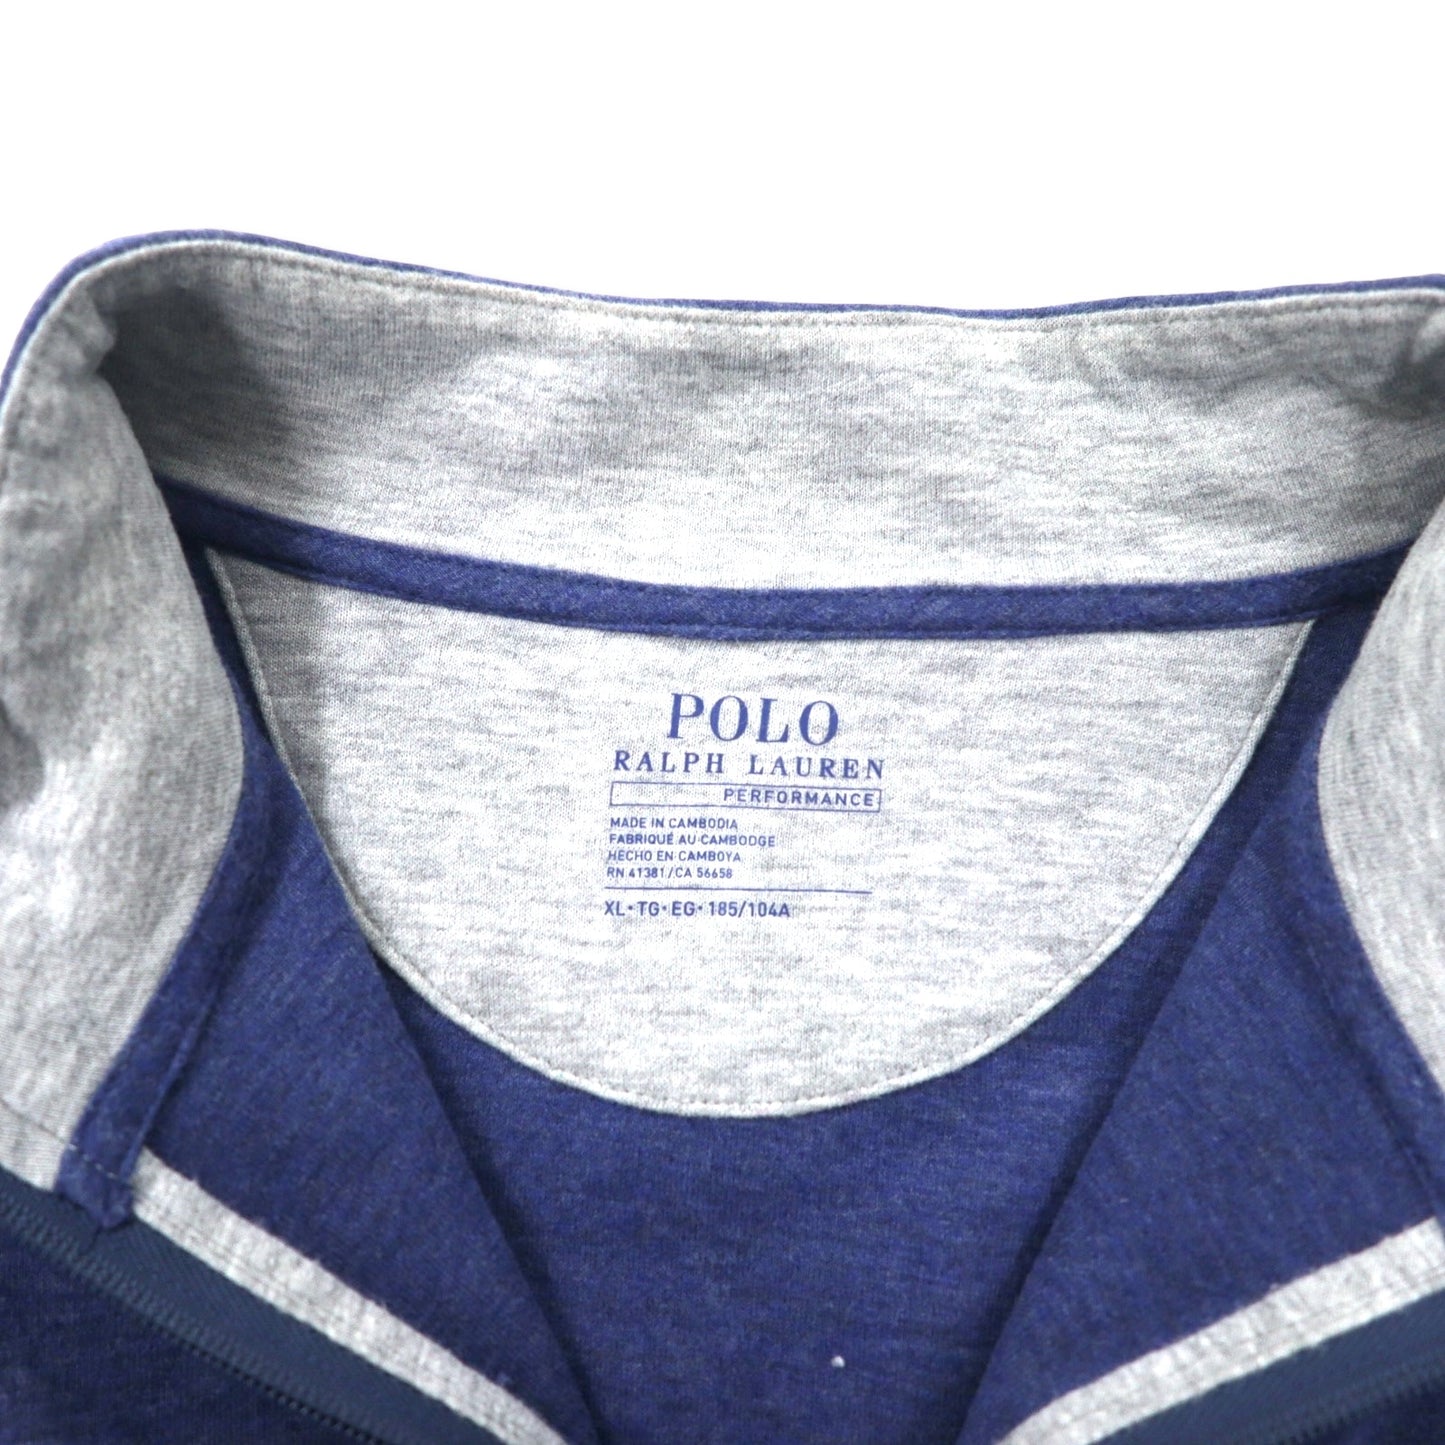 POLO RALPH LAUREN ハーフジップ スウェット XL ブルー コットン PERFORMANCE スモールポニー刺繍 ビッグサイズ